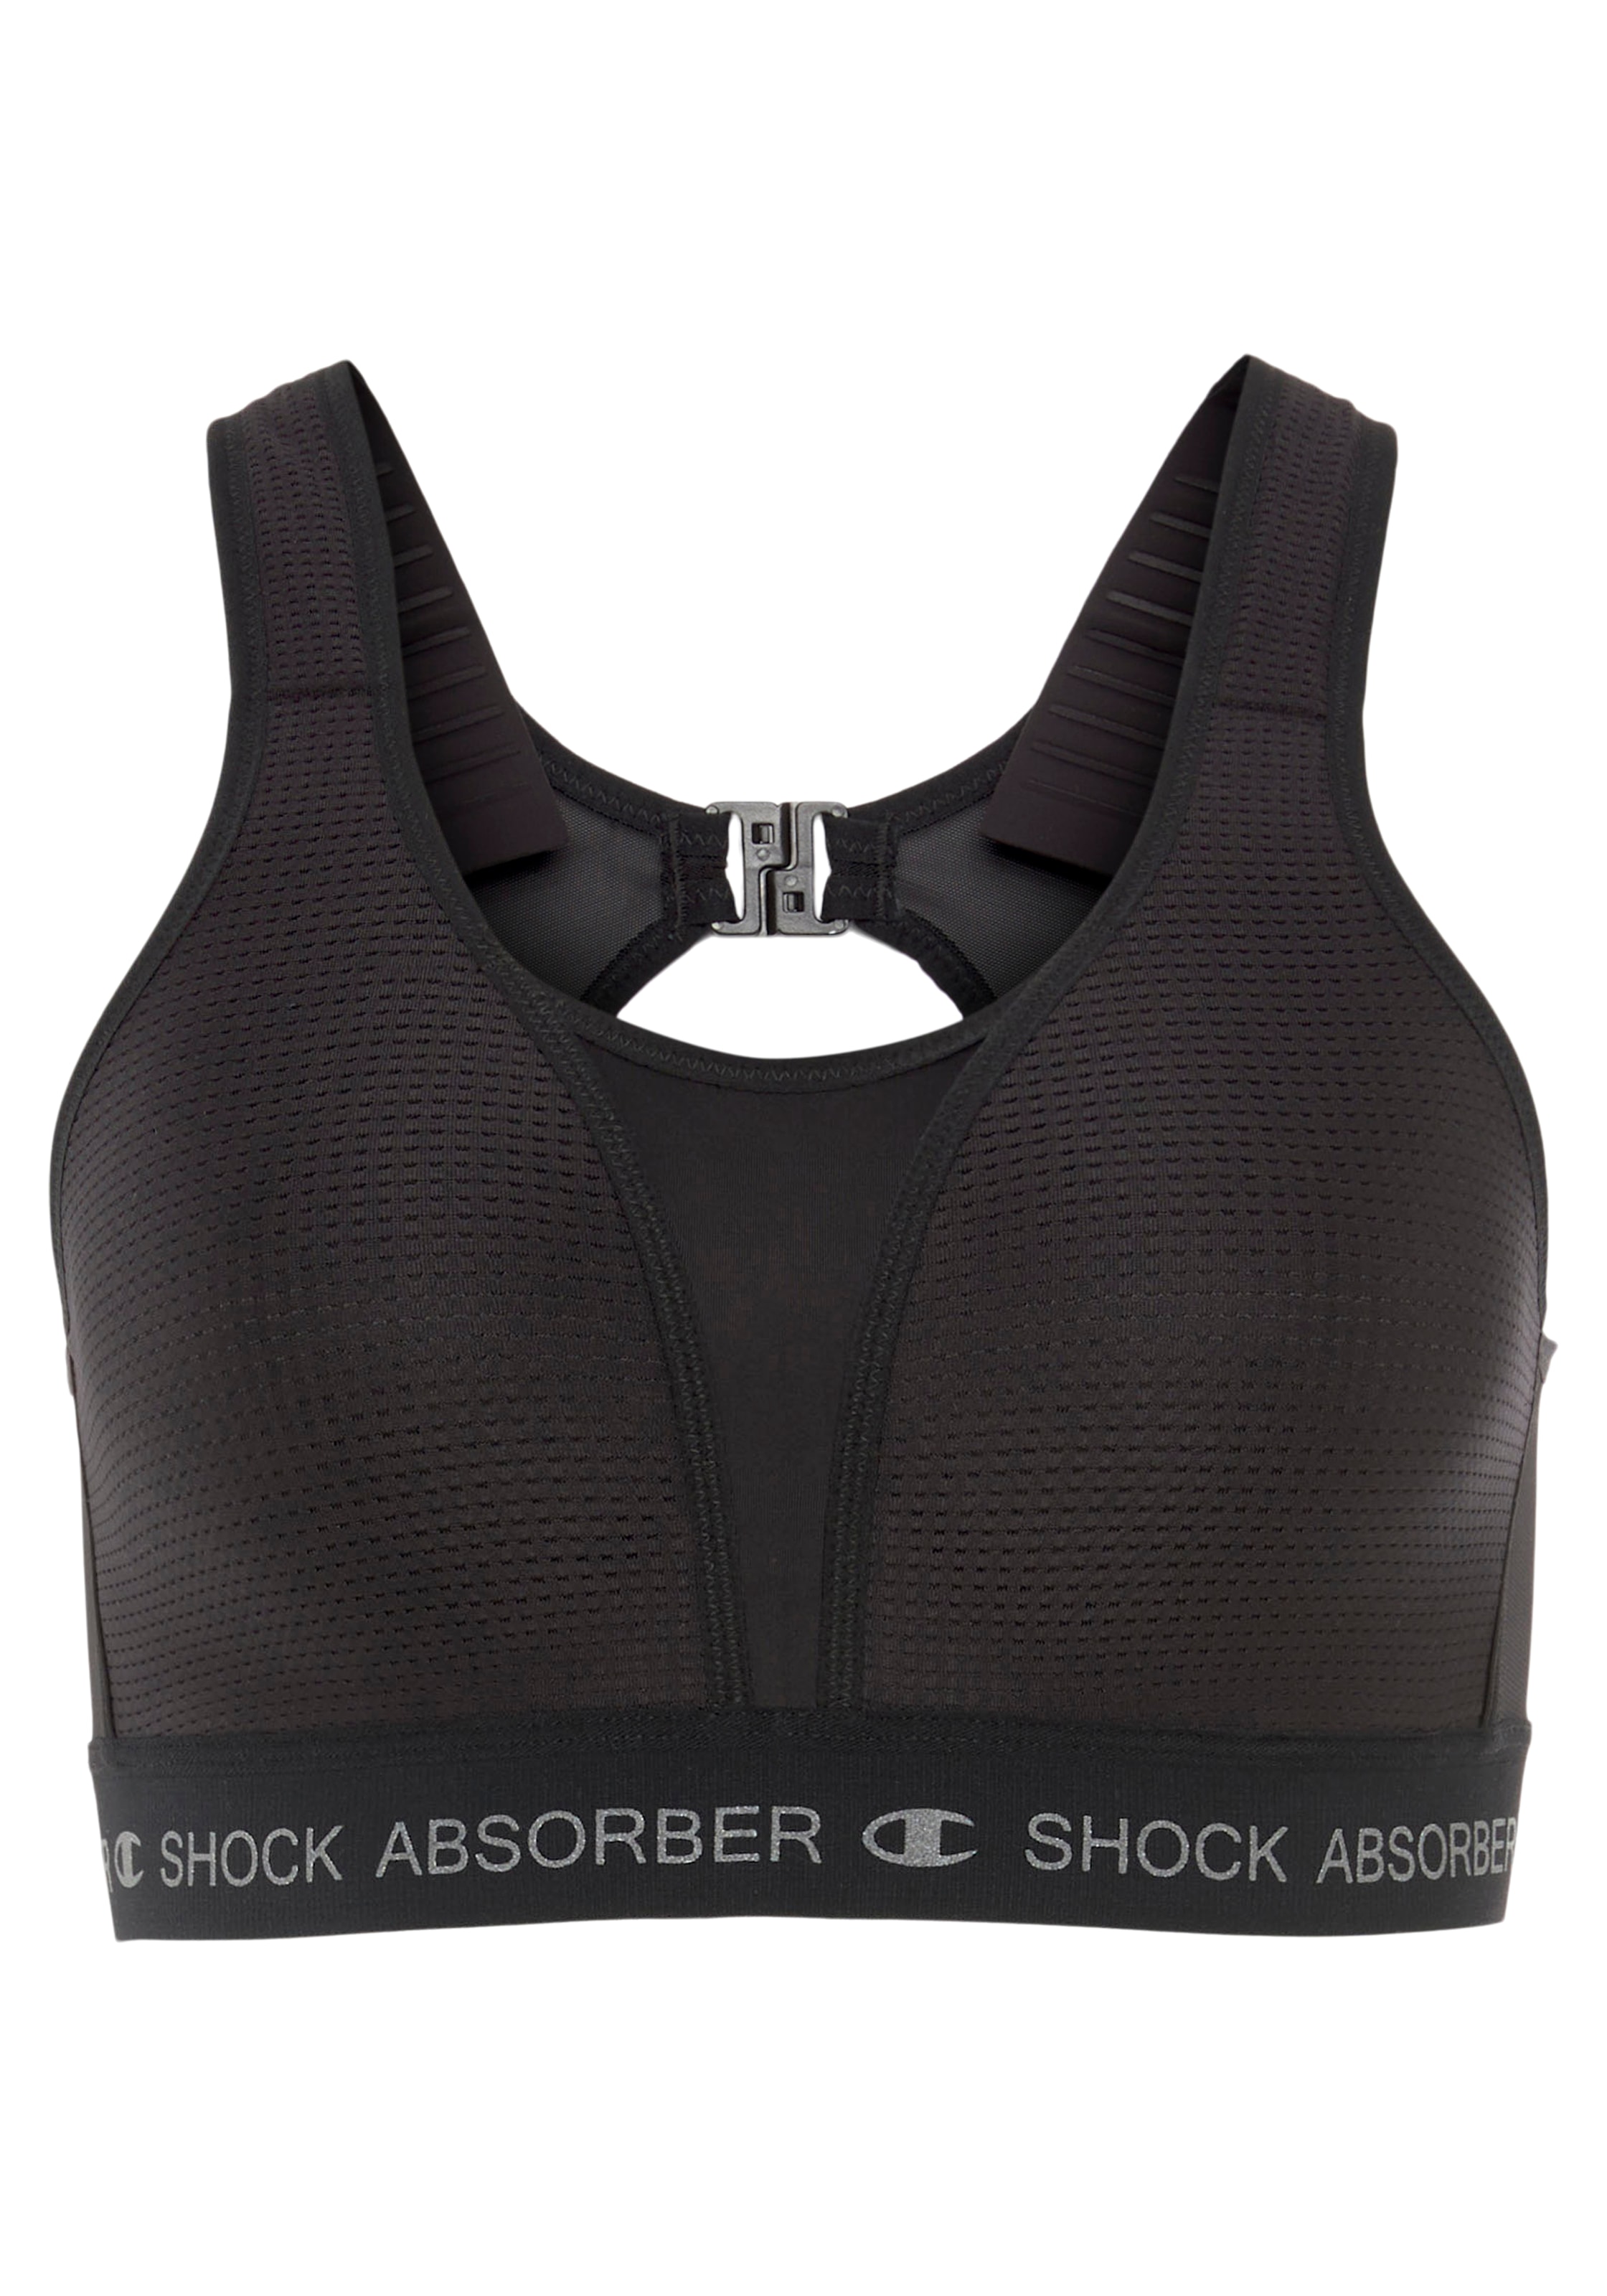 Shock Absorber Sport-BH, der ideale BH für Laufarten und Sportarten mit starker Belastbarkeit